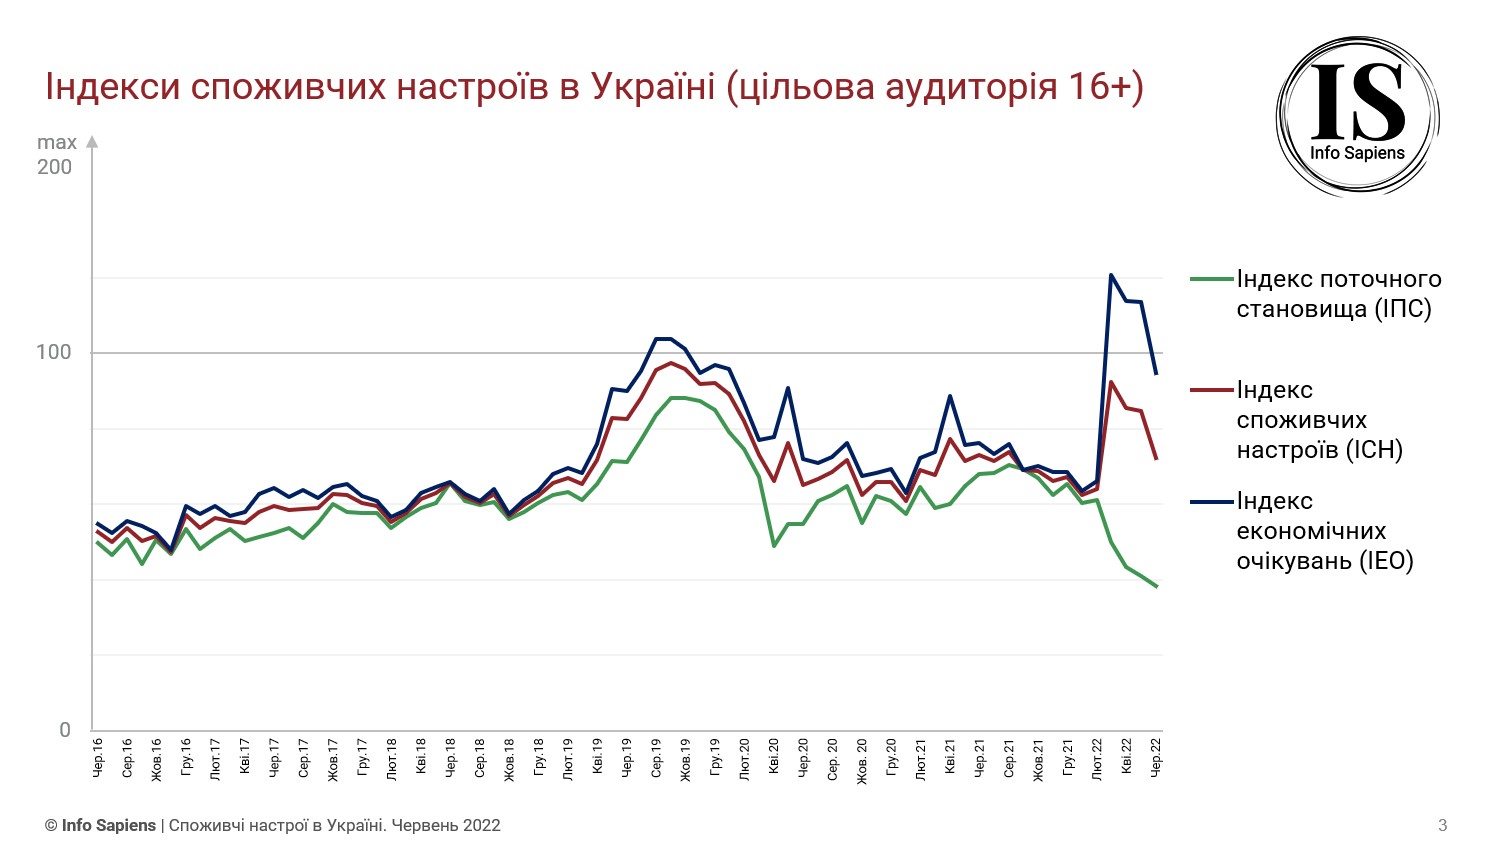 Графік динаміки індексу споживчих настроїв в Україні за червень 2022 (цільова аудиторія 16+)